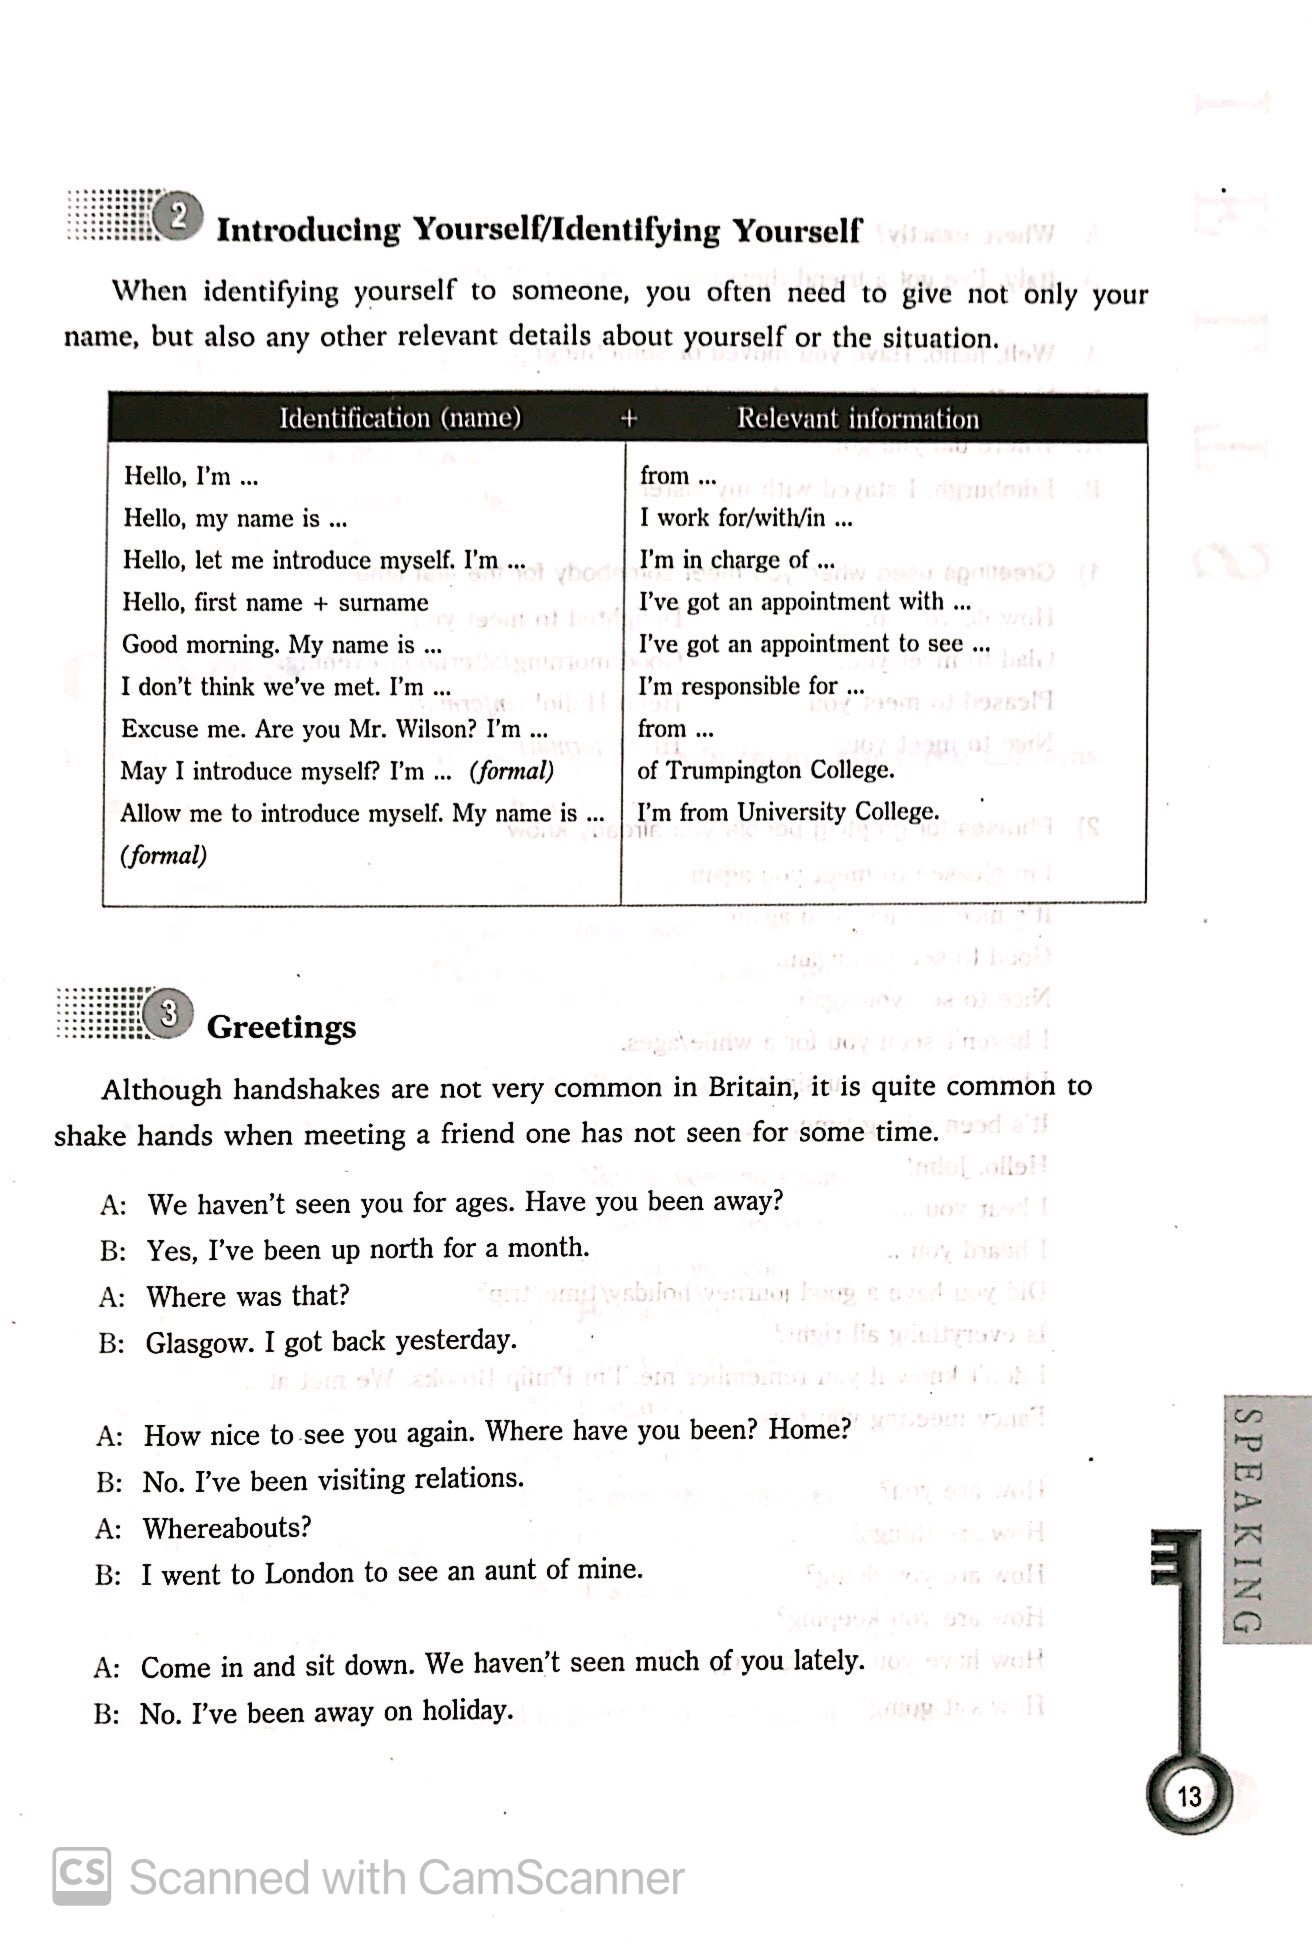 IELTS - Speaking Strategies For The IELTS Test Kèm 1CD PDF